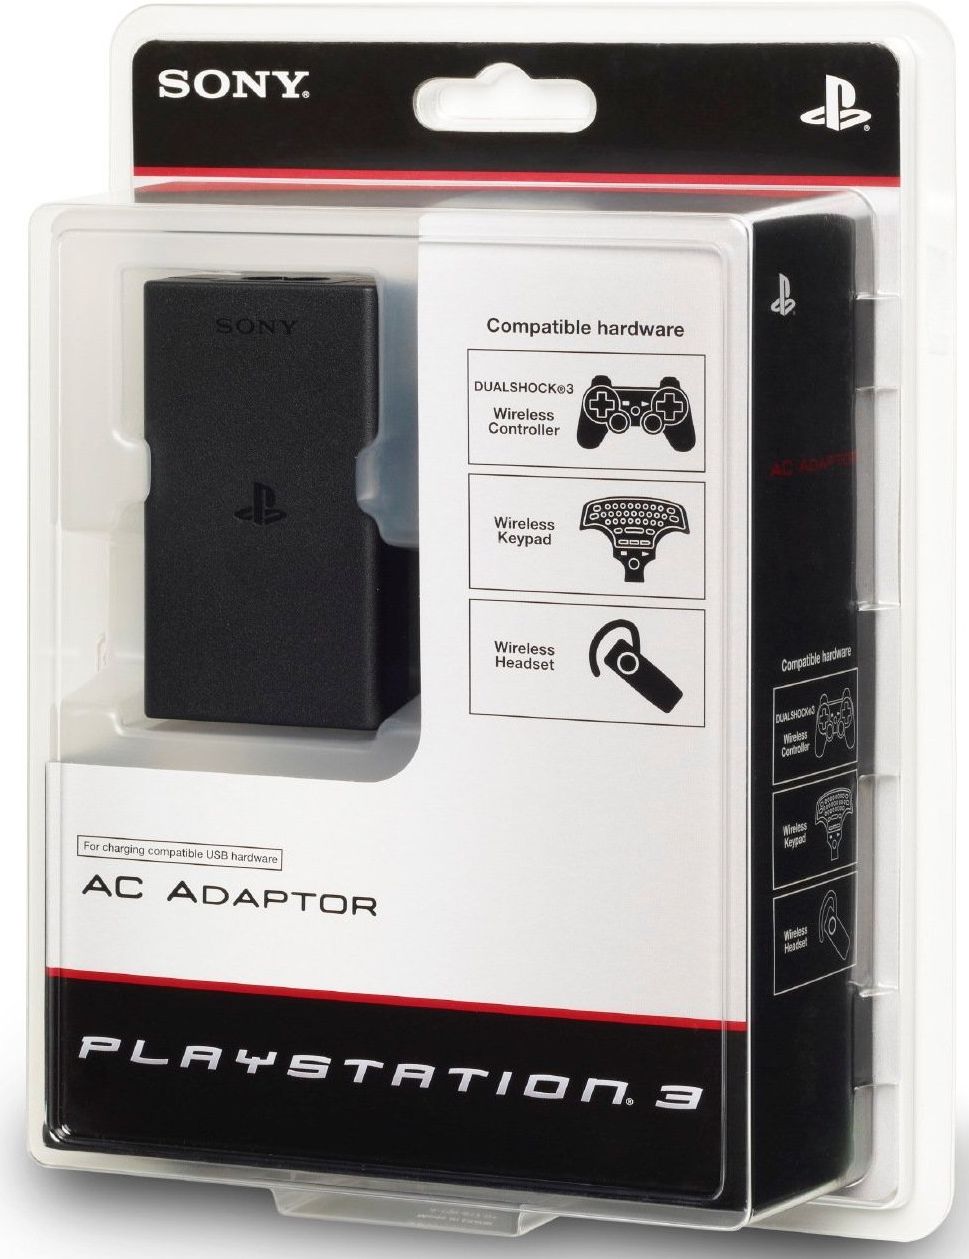 PlayStation 3 AC Adapter tartozékokhoz (újszerű) - PlayStation 3 Kiegészítők